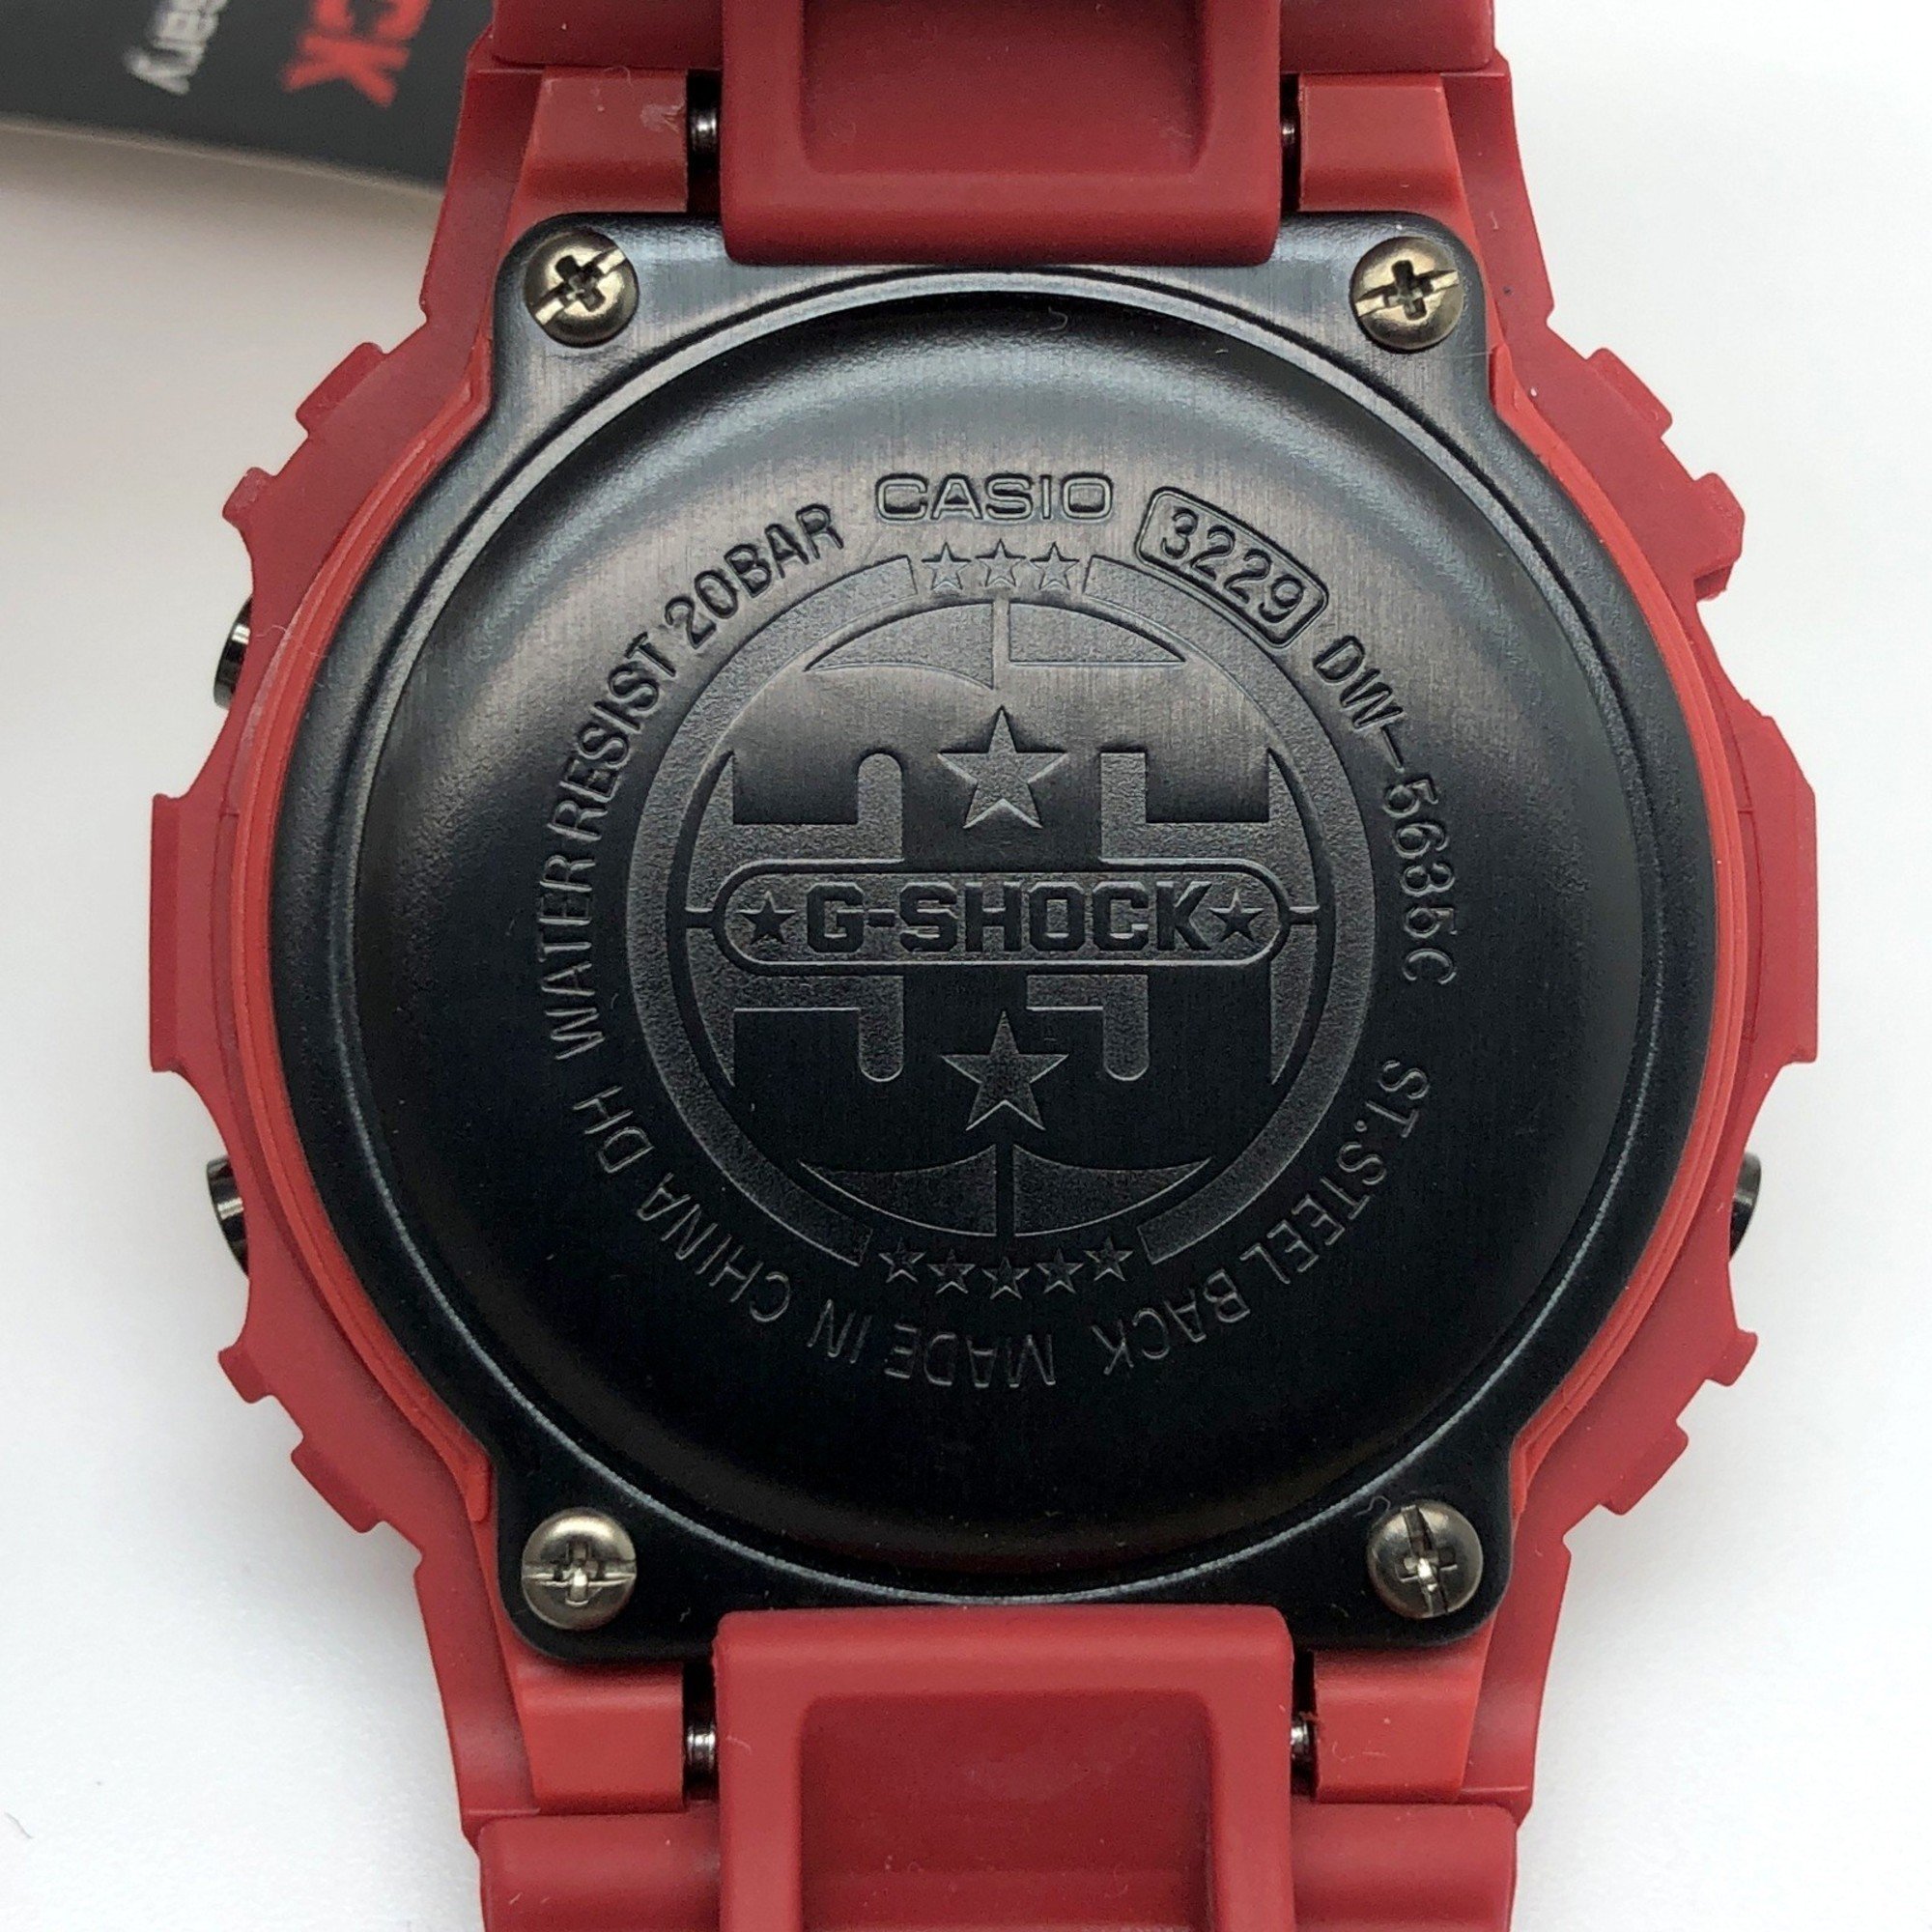 G-SHOCK CASIO Watch DW-5635C-4 35th ANNIVERSARY RED OUT Matte Paint Digital Mikunigaoka Store ITG55DIYBZ48